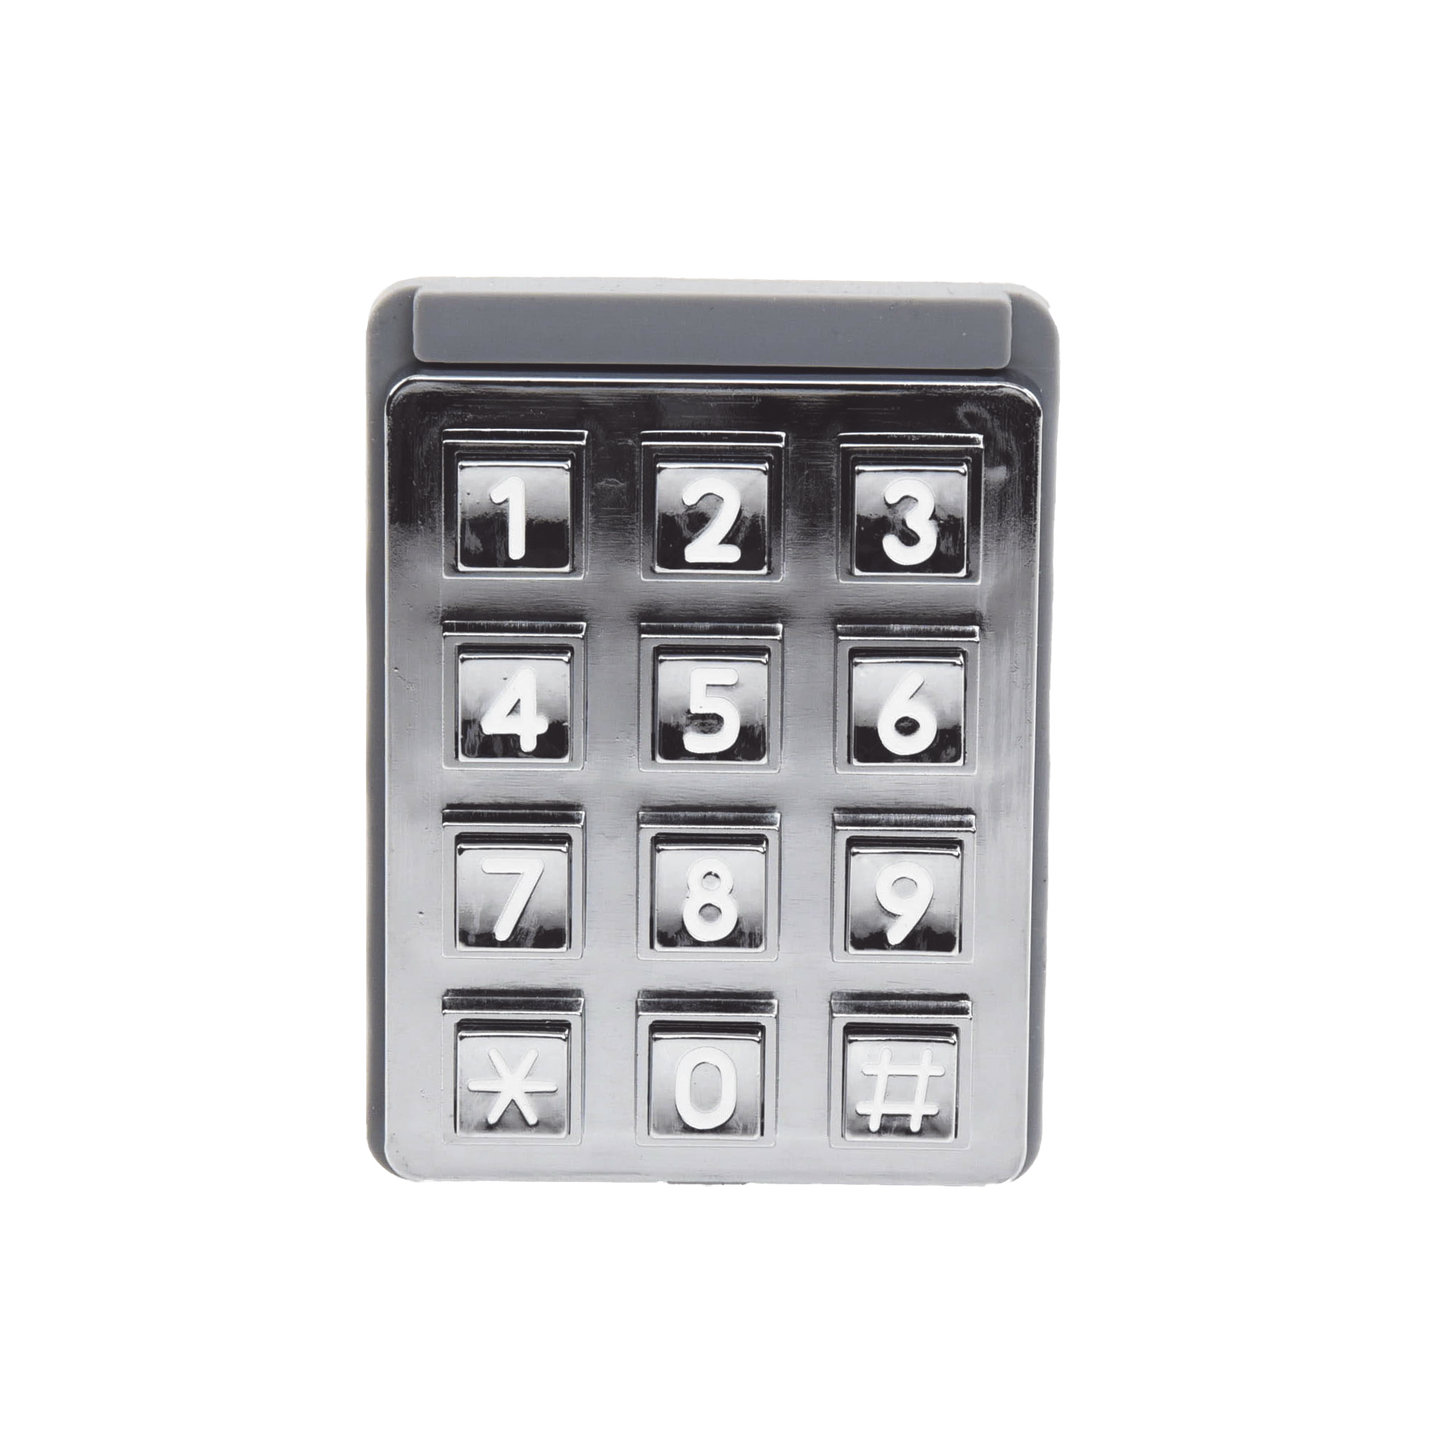 Refacción / Teclado Para Portero Telefonico Doorking Serie 1802 / Compatible con 1802-082